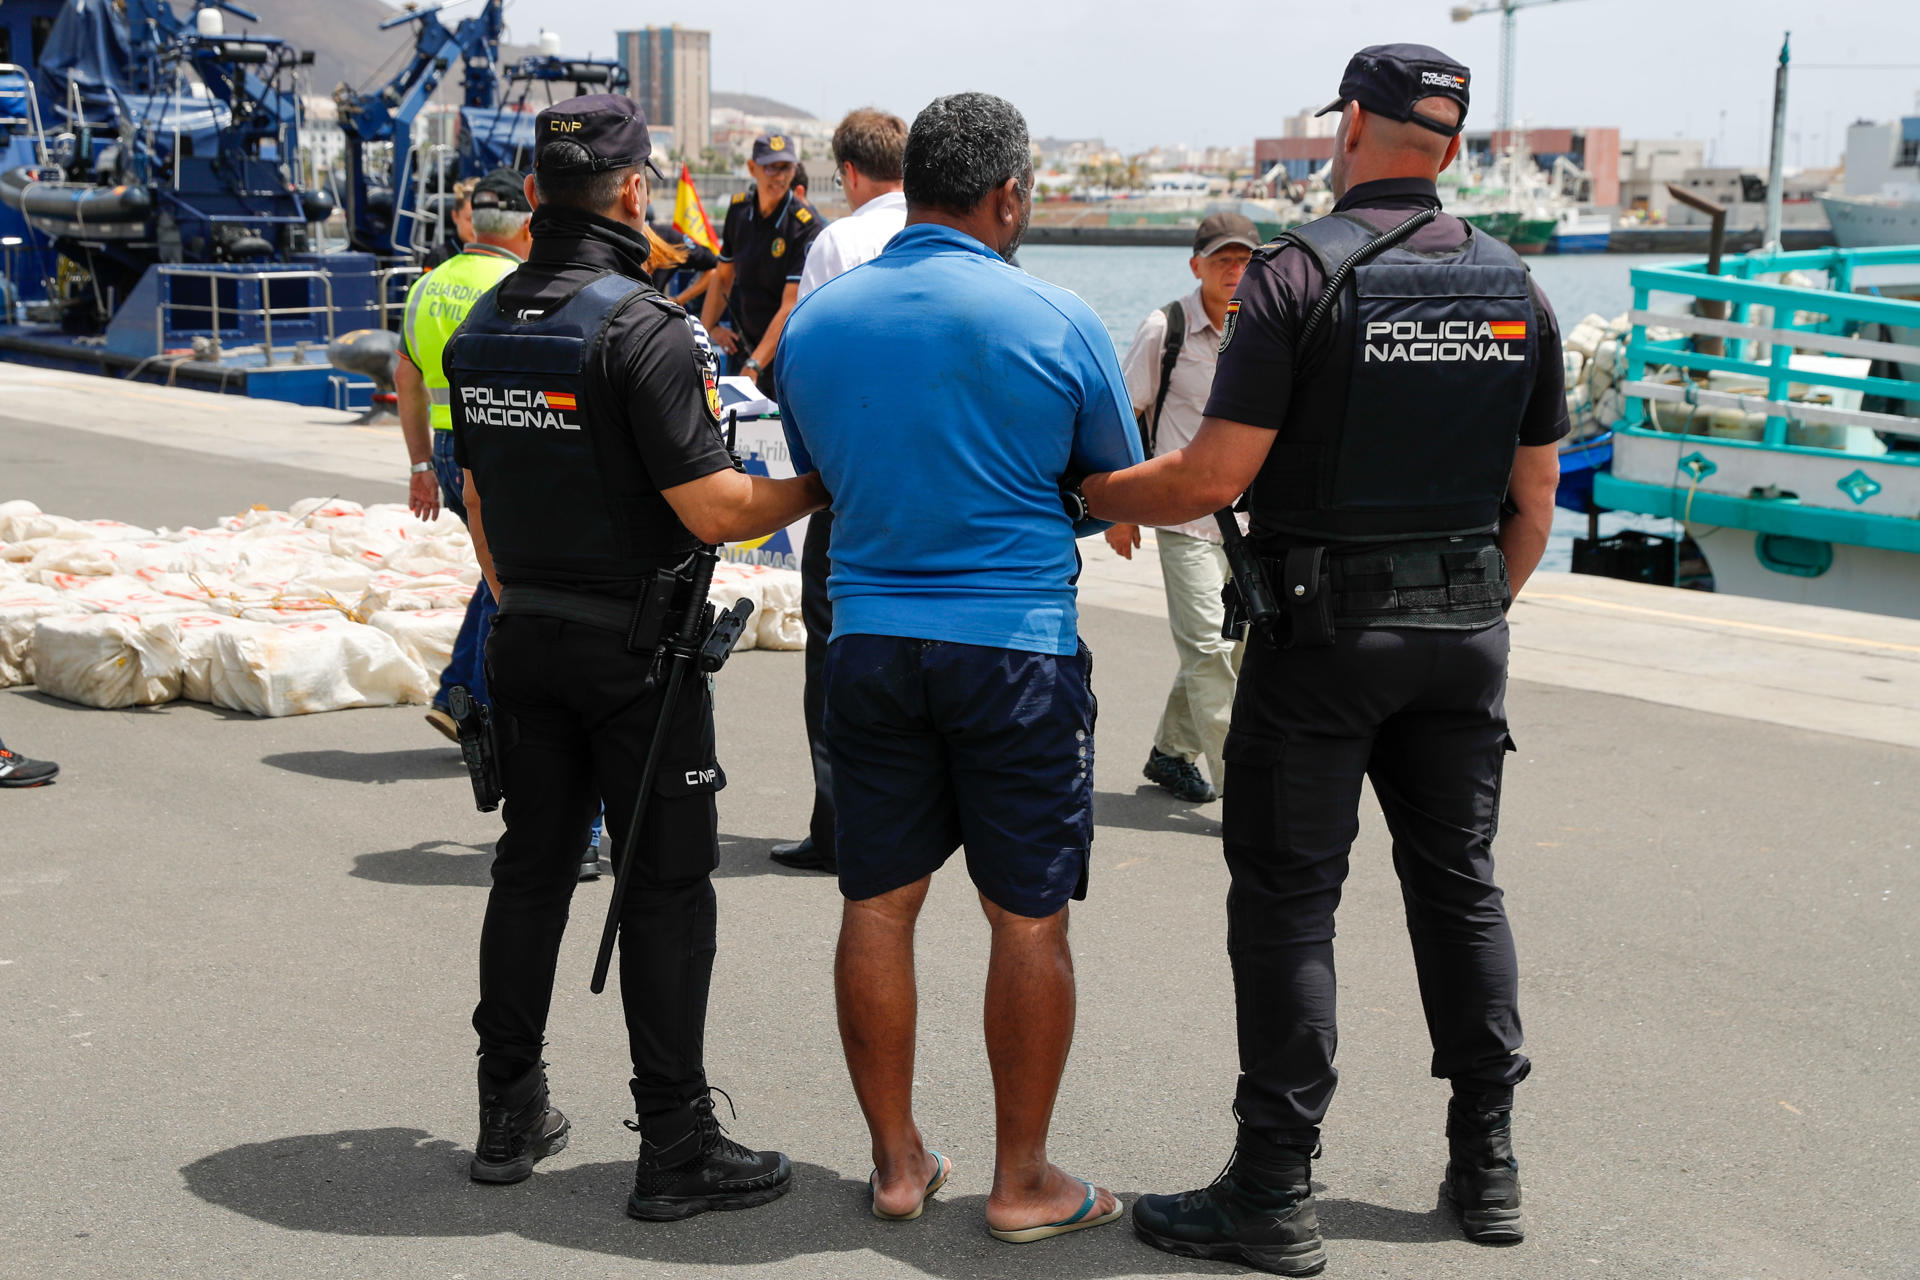 La Policía custodia en el puerto de Las Palmas de Gran Canaria a uno de los detenidos, el patrón del pesquero, mientras se descarga el alijo de 1.500 kilos de cocaína. EFE/Elvira Urquijo Á.